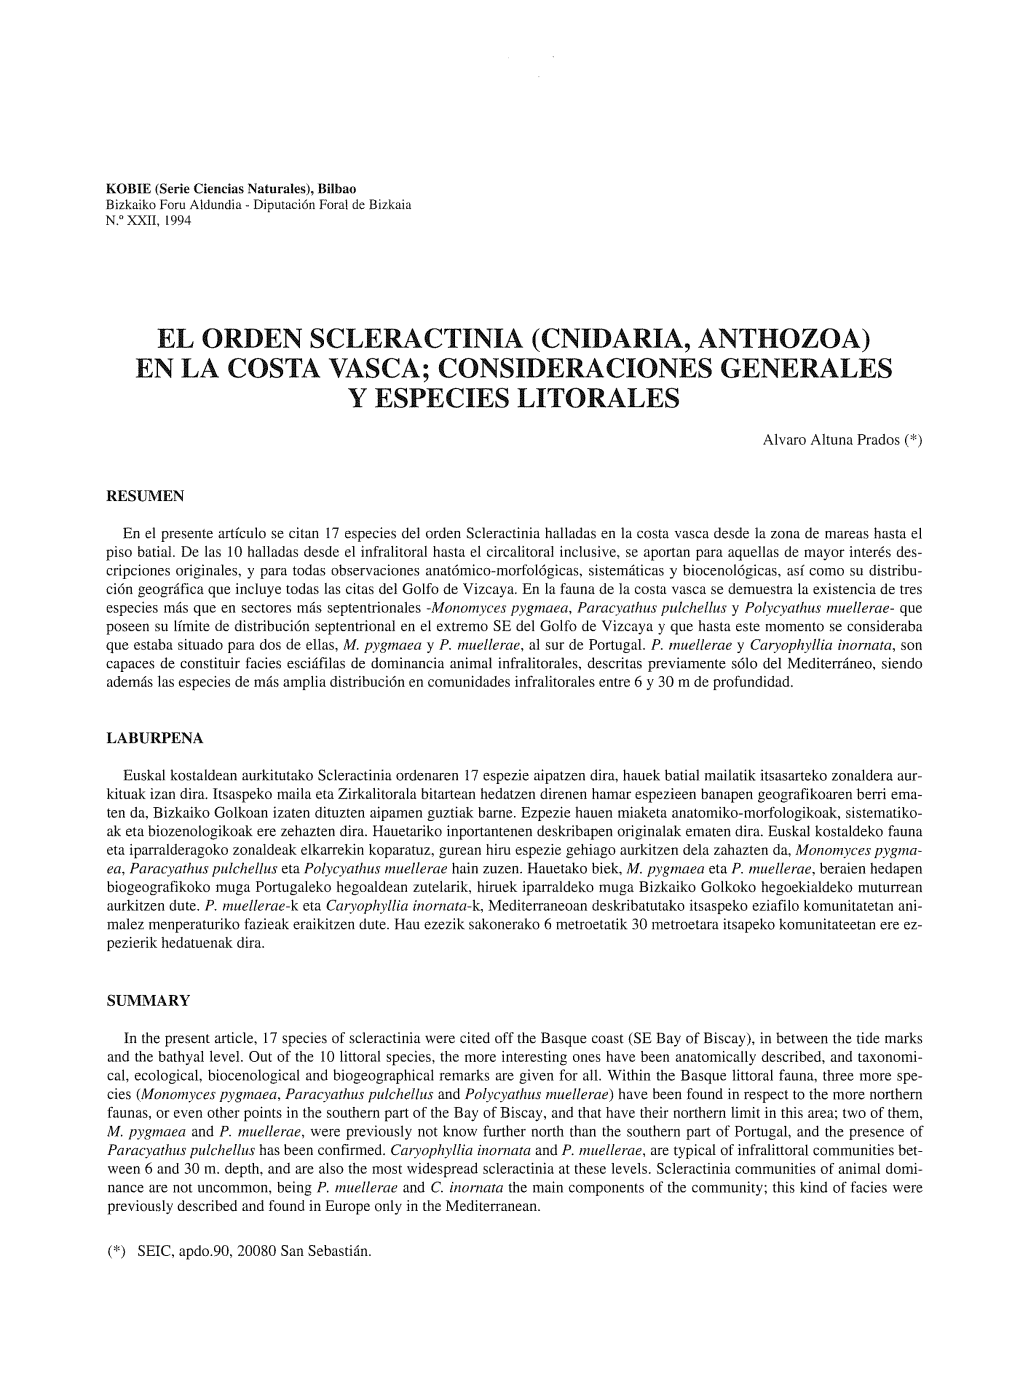 El Orden Scleractinia (Cnidaria, Anthozoa) En La Costa Vasca; Consideraciones Generales Y Especies Litorales